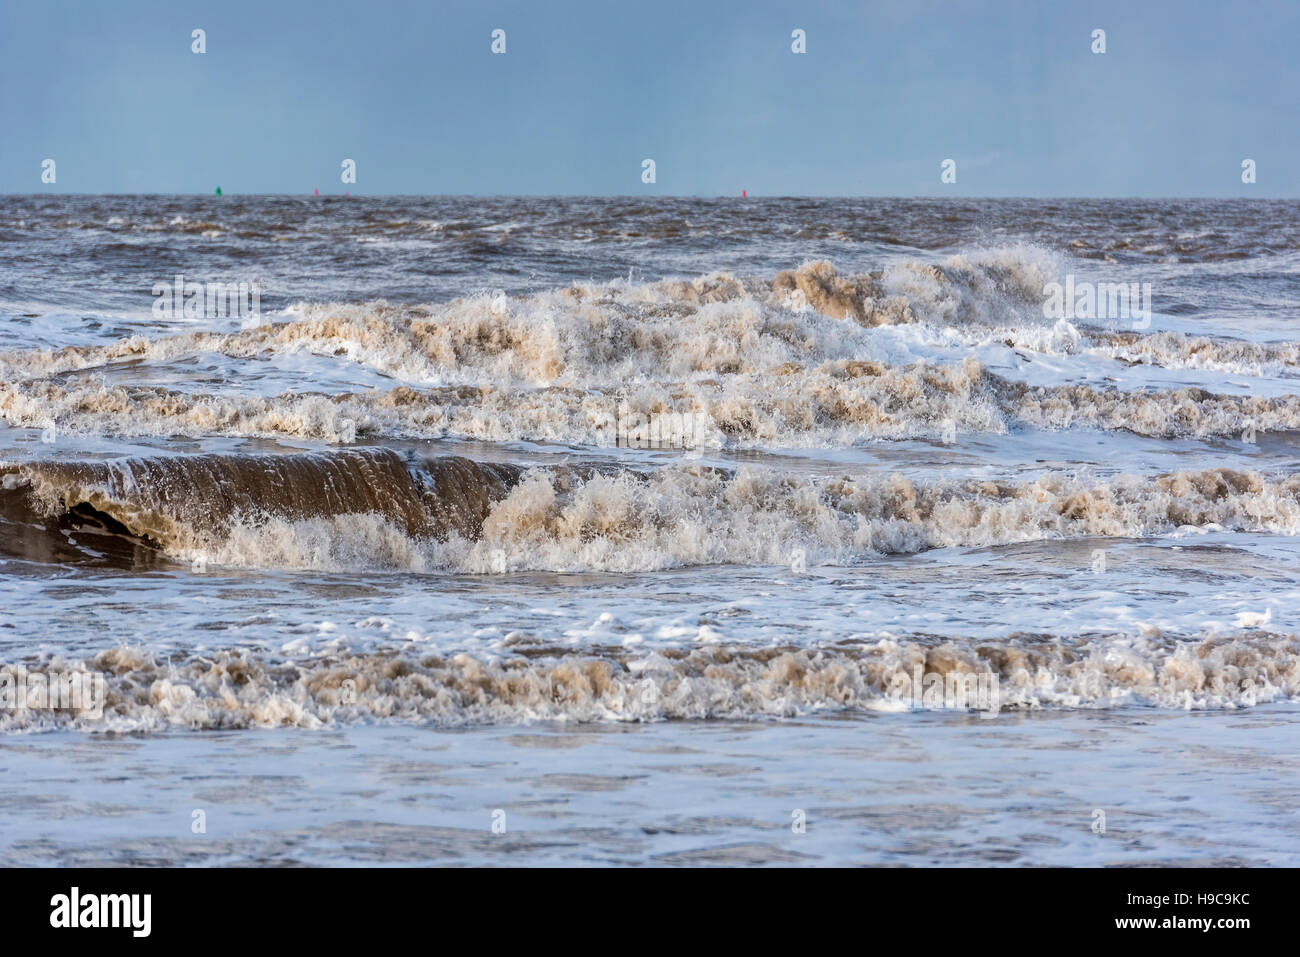 Tempestoso fiume Mersey onde infrangersi sulla spiaggia di New Brighton. Wirral Merseyside. Nord Ovest Inghilterra Foto Stock